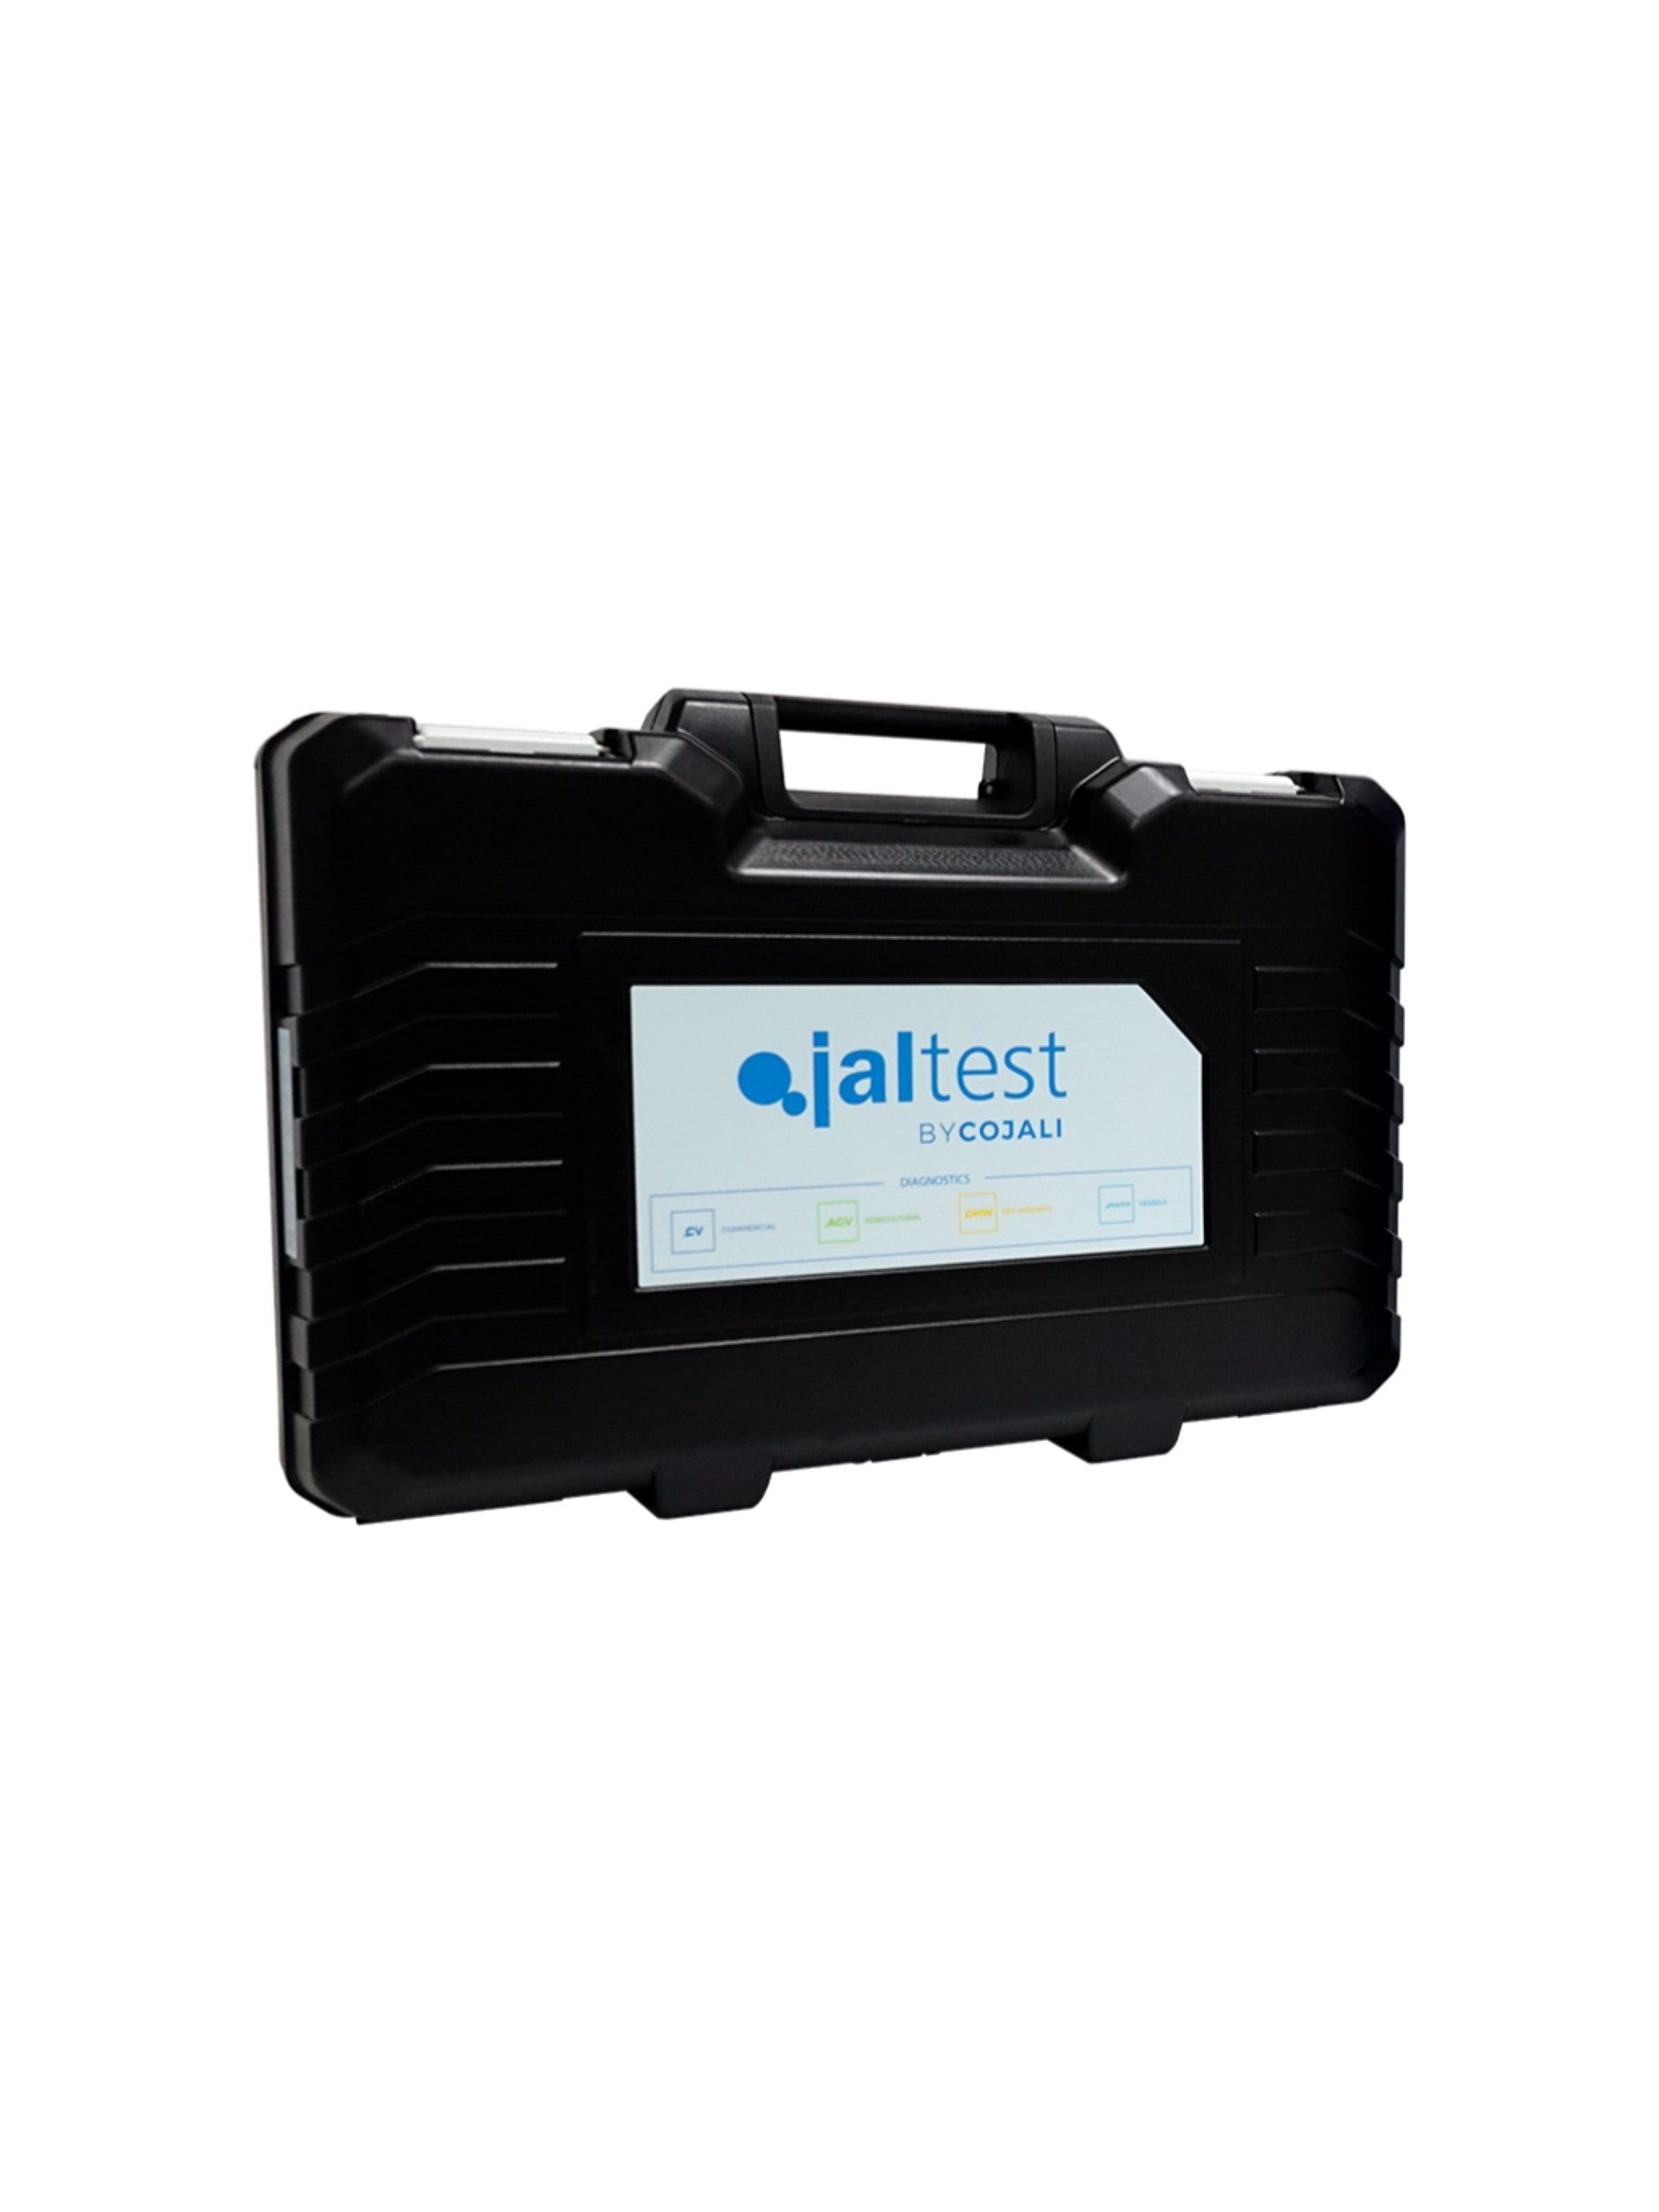 70003015 Transport Hardcase - Jaltest Marine Outboard Motor Diagnostic Tool Kit